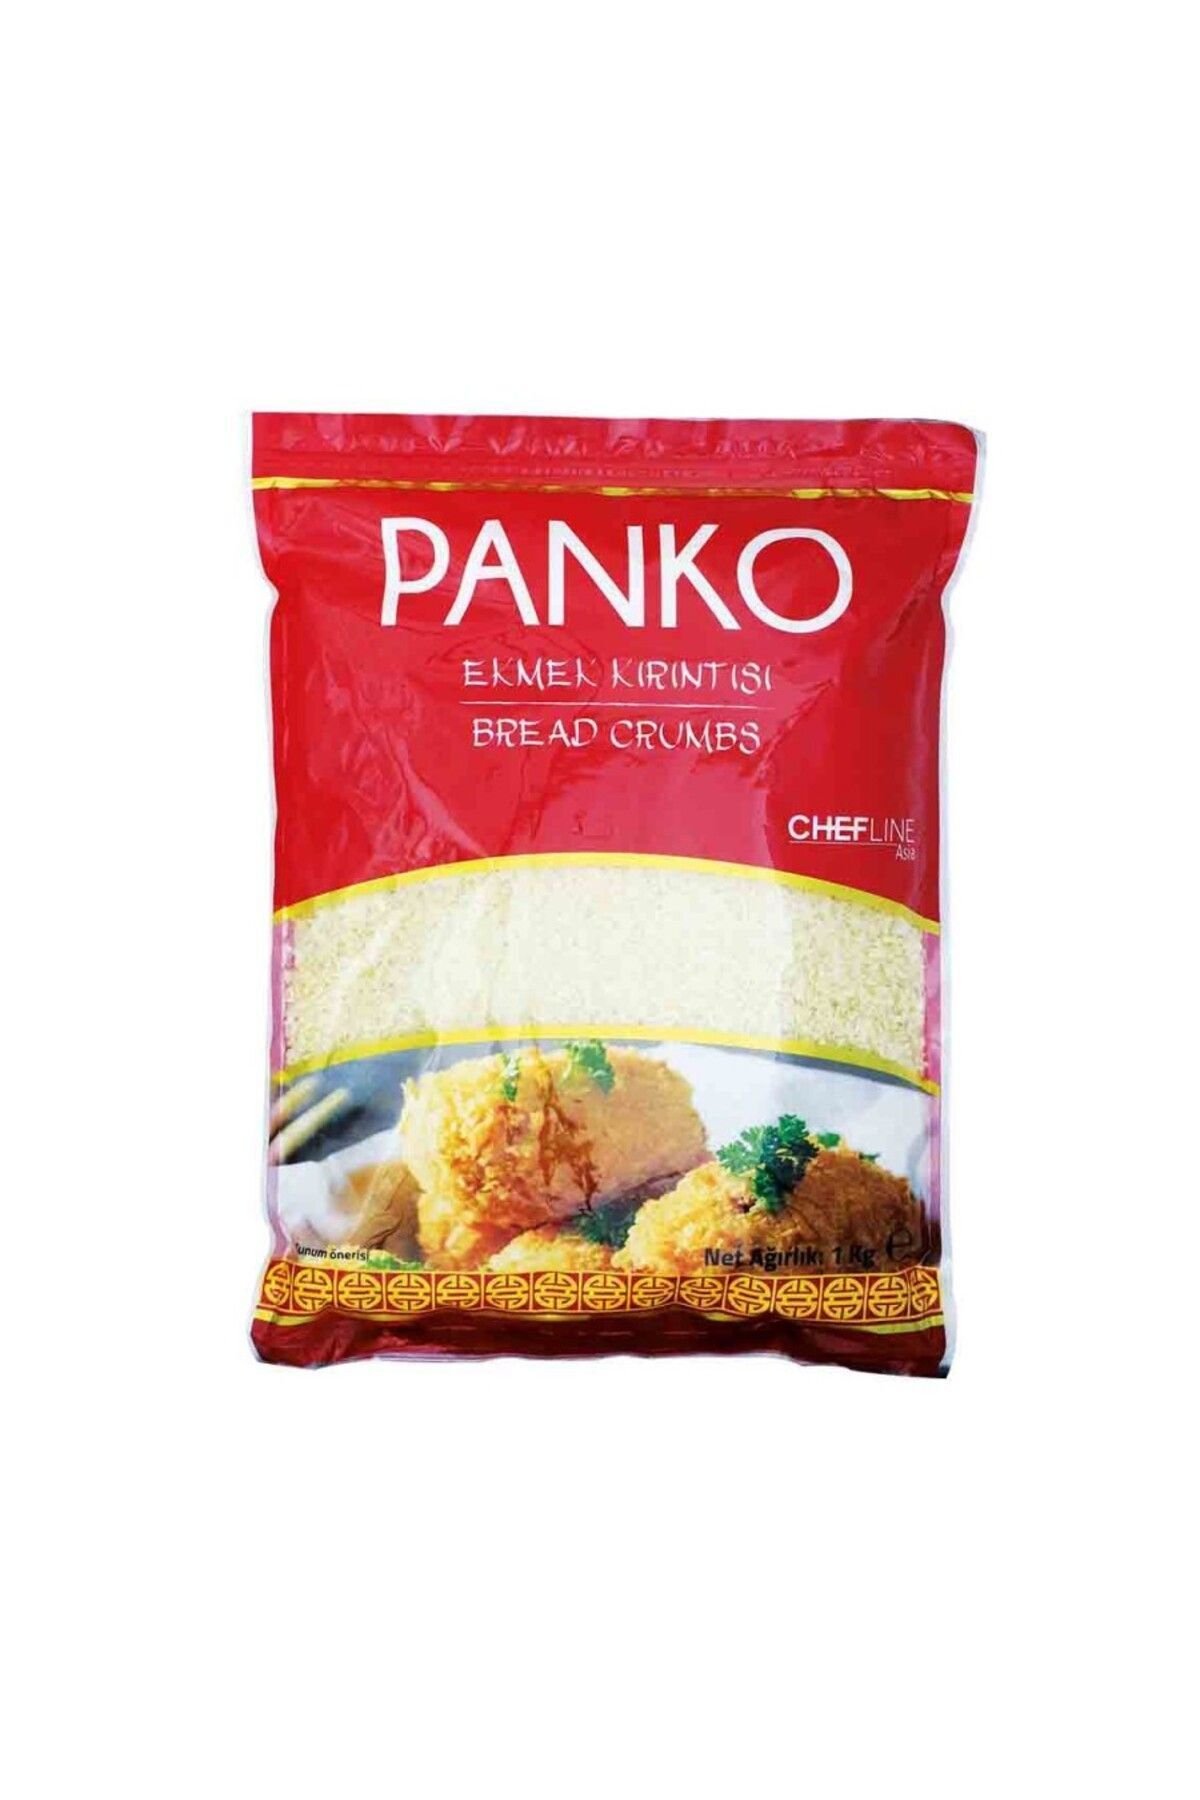 Chefline Asia Ekmek Kırıntısı Panko 1kg Bread Crumbs